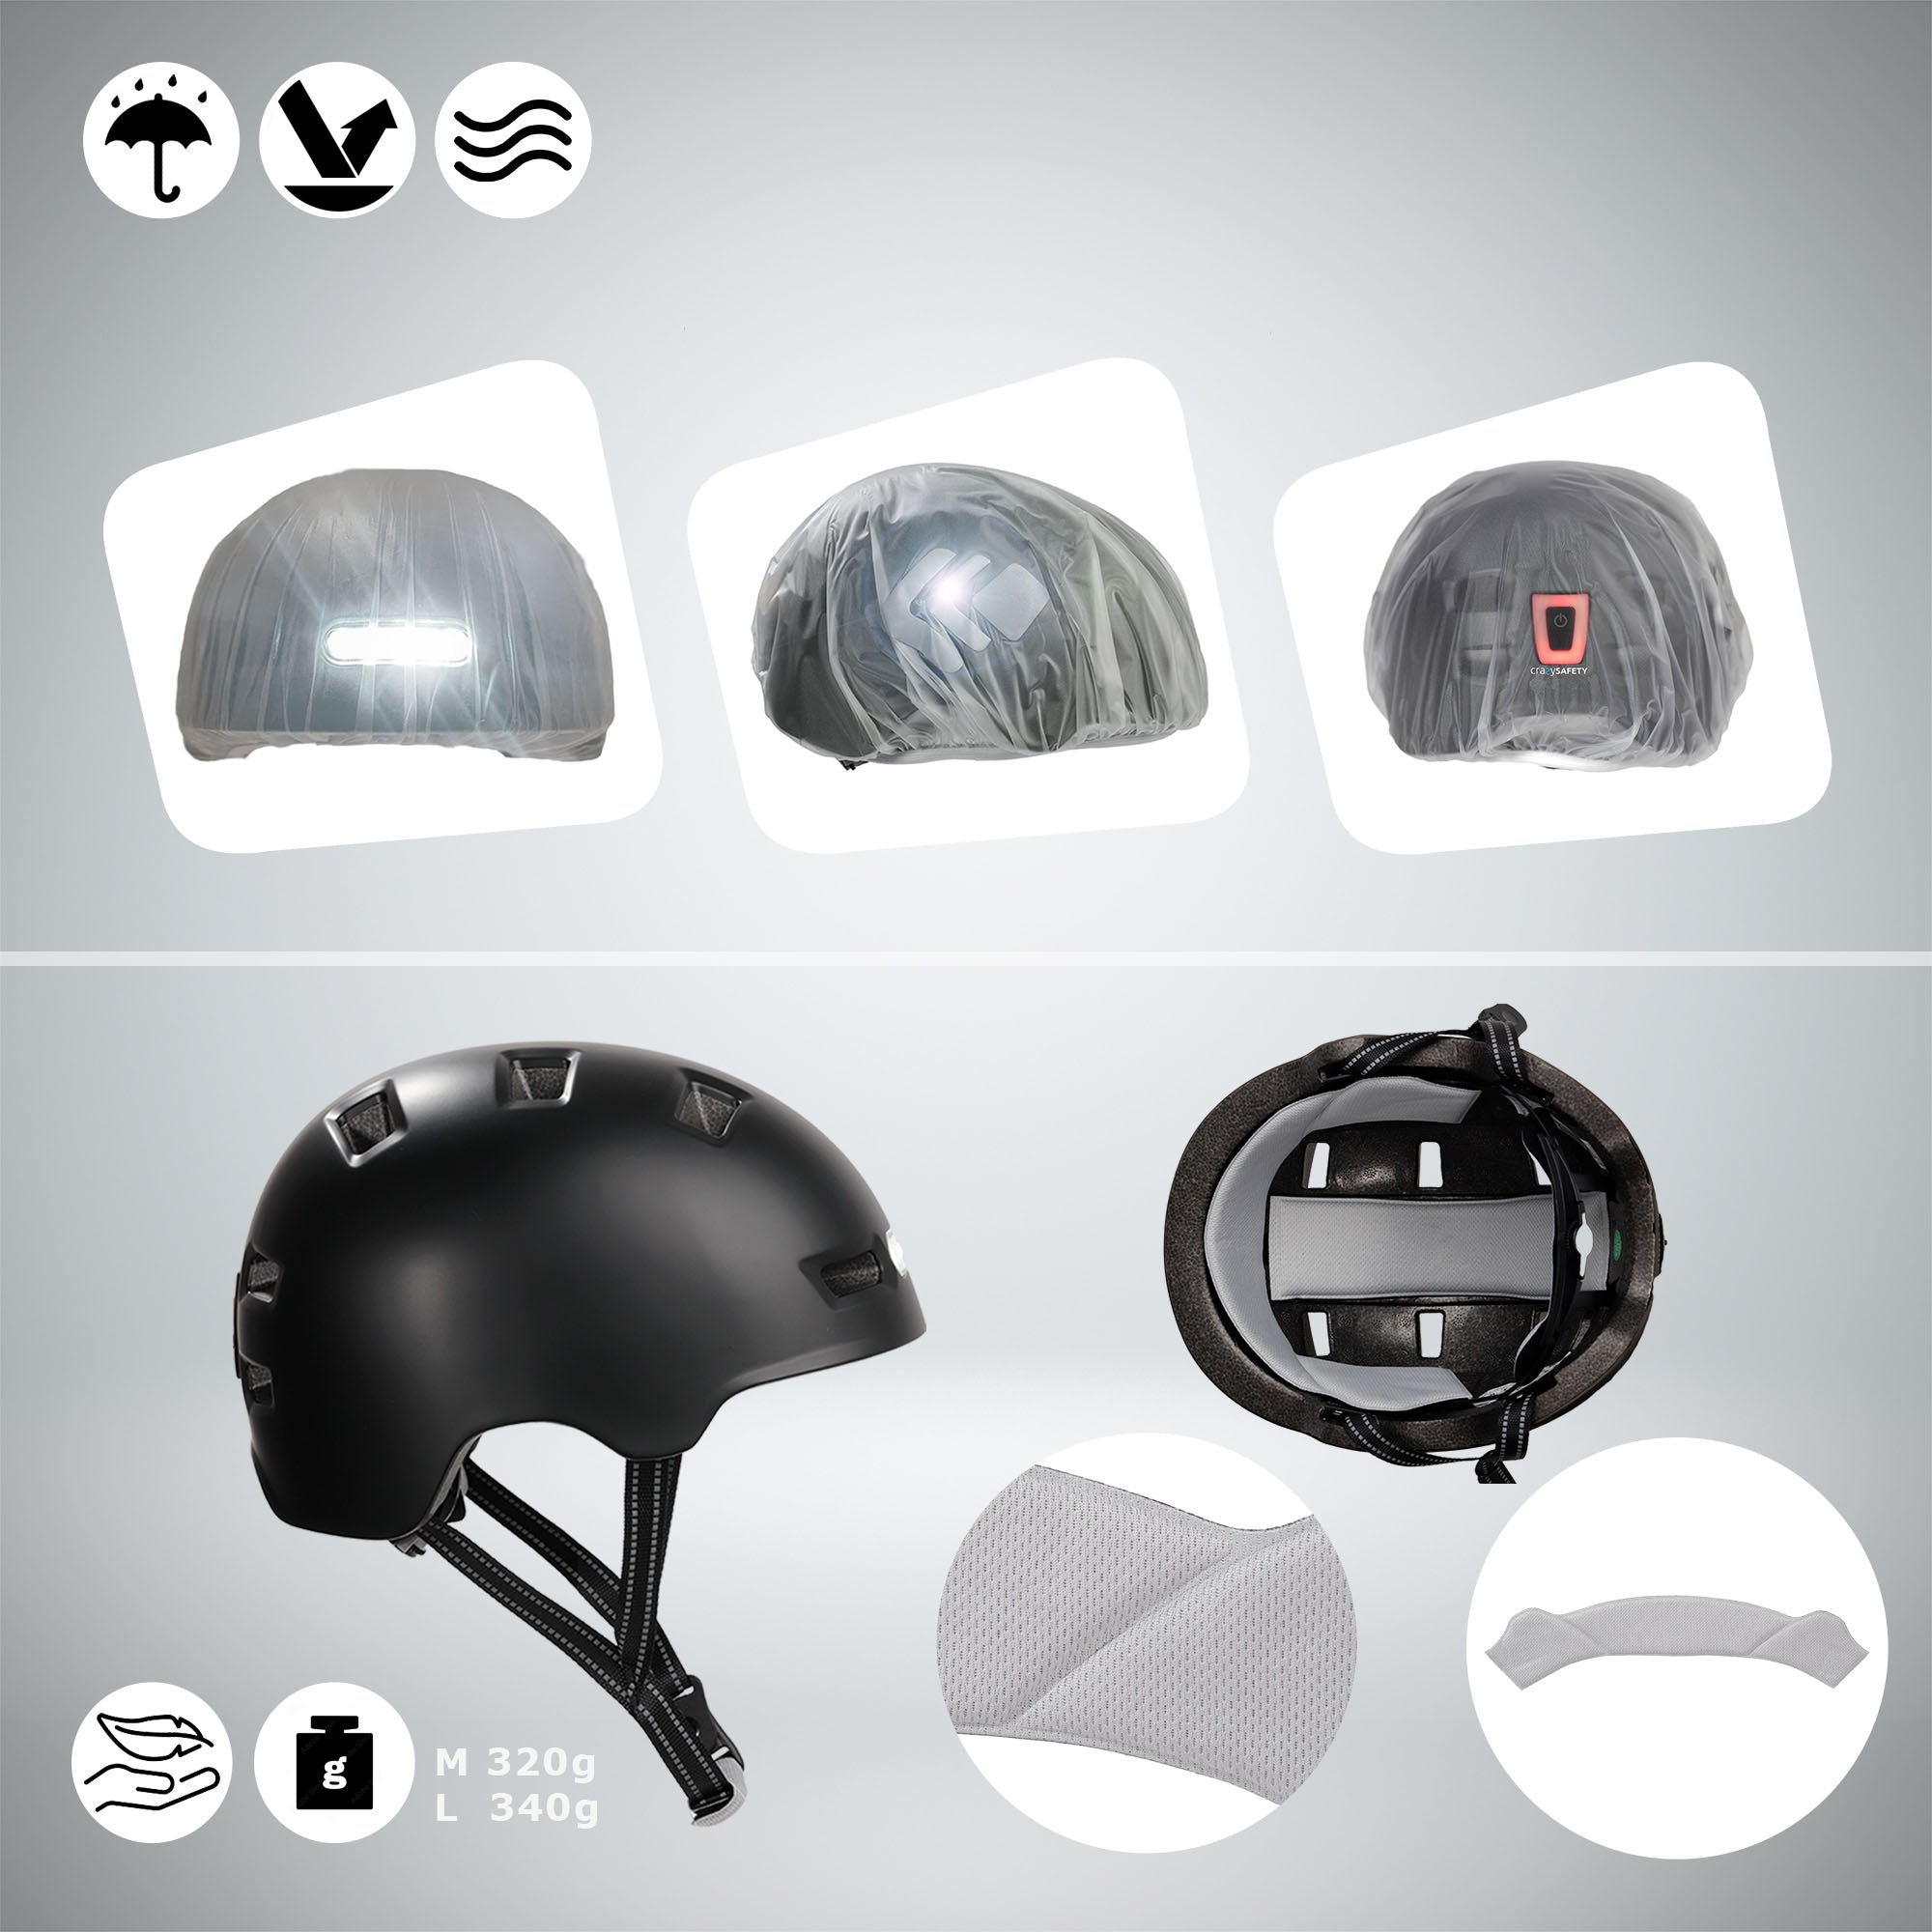 Vertigo helmet